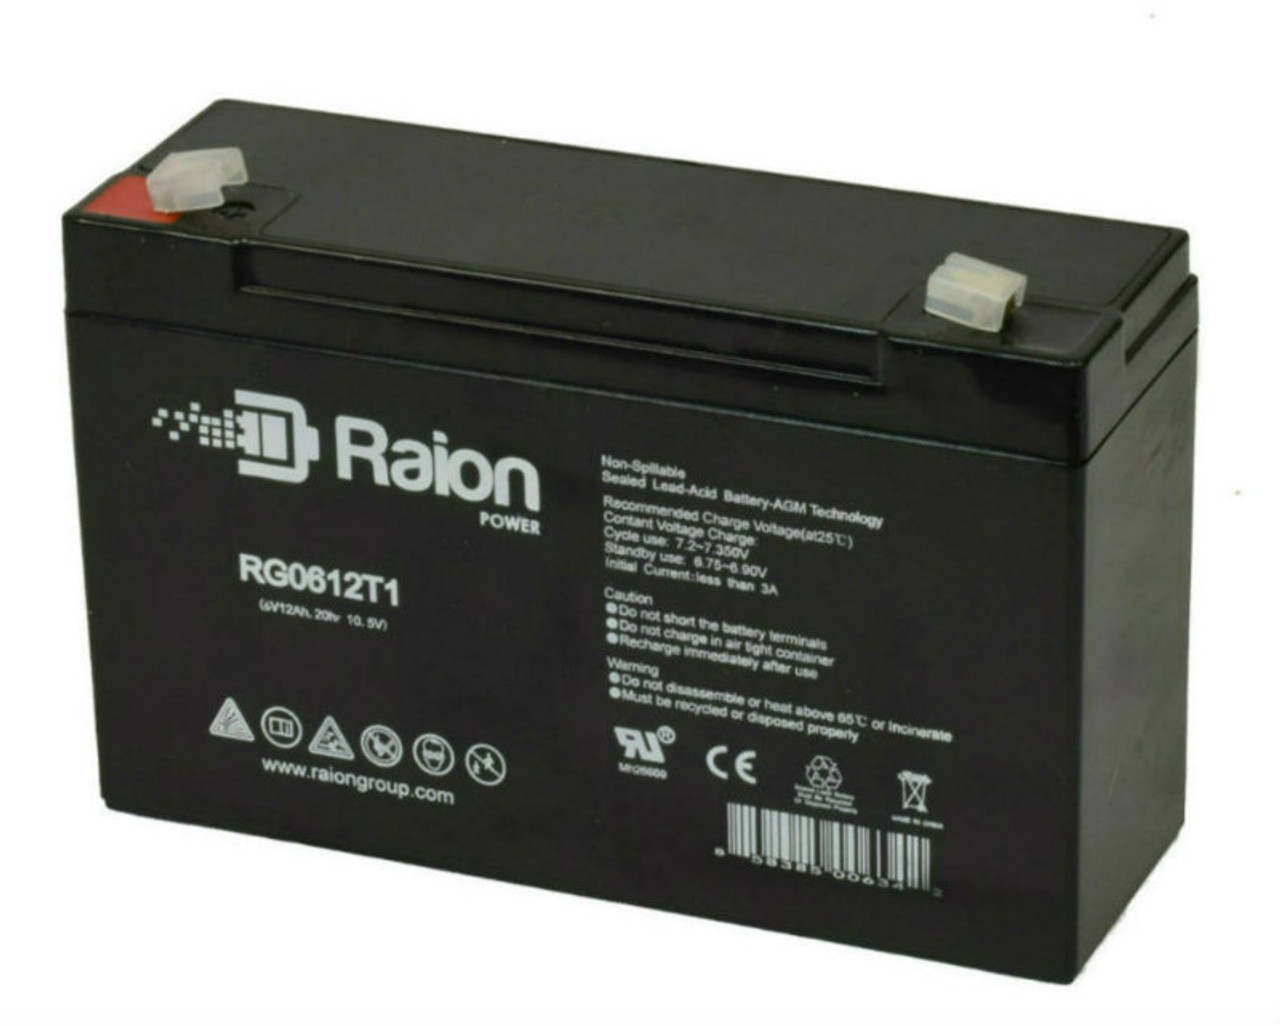 Raion Power RG06120T1 Replacement Battery for Zibak ZP10-6